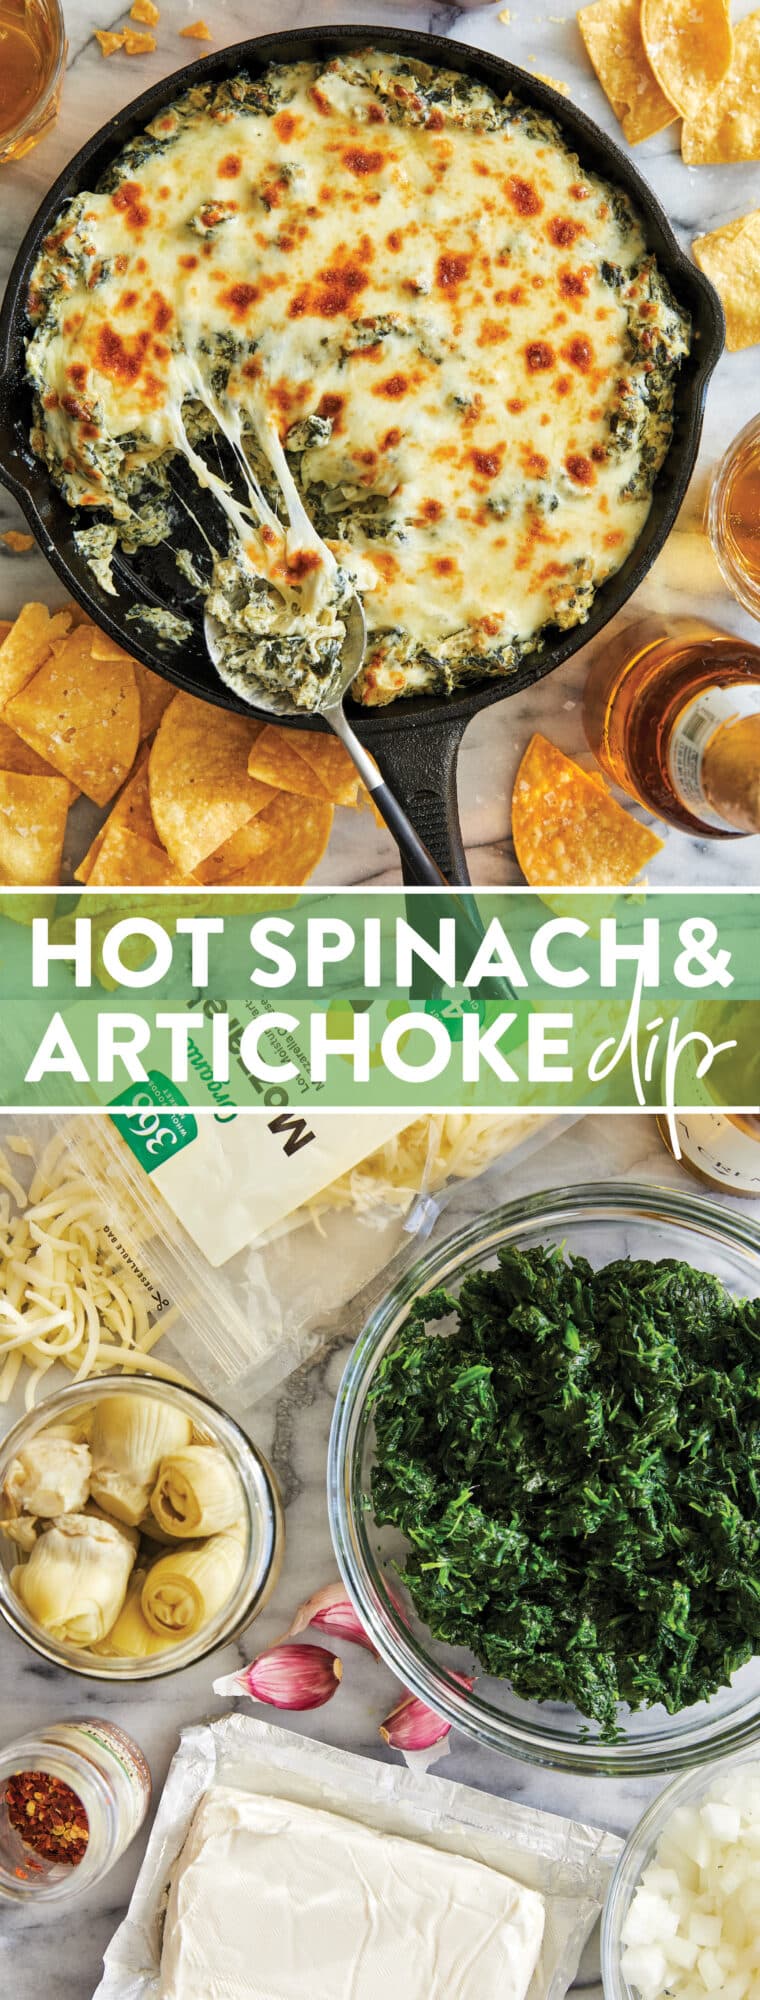 Hot Spinach and Alcachofra Dip - O MELHOR molho de espinafre e alcachofra!  Tão extravagante, tão rico, tão cremoso, tão fedorento fácil.  Com certeza agradará a todos!